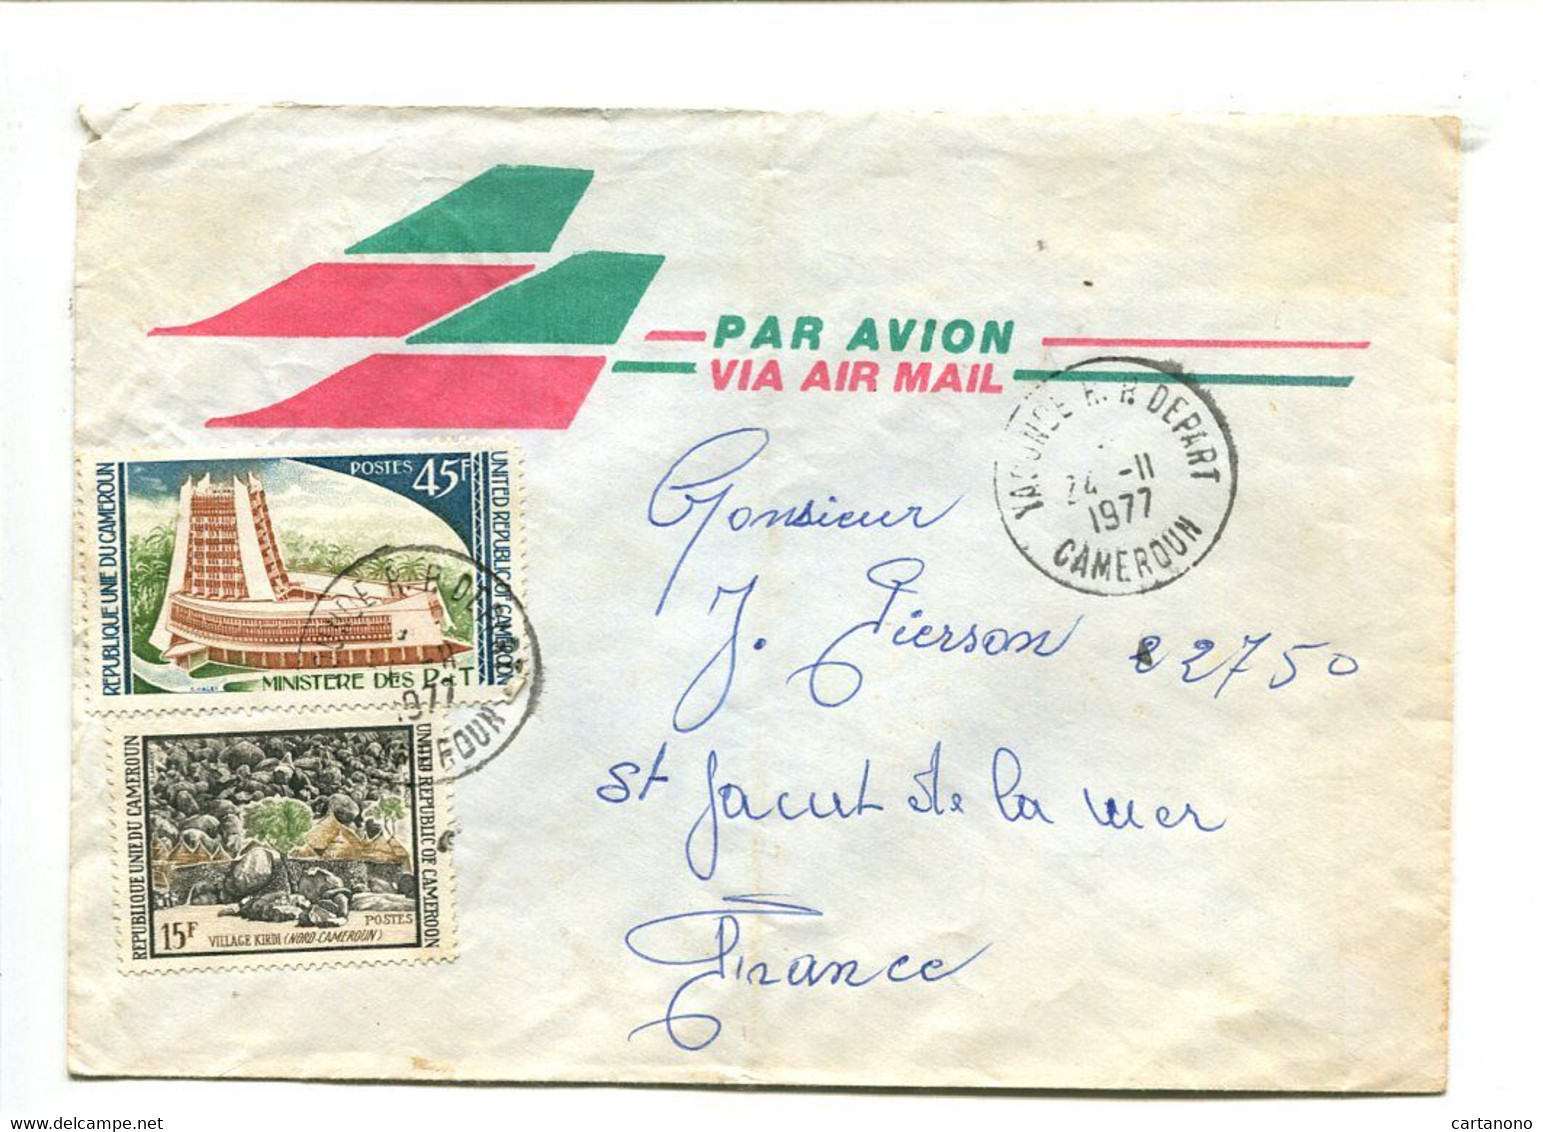 CAMEROUN Yaoude R.P. Départ 1977 - Affranchissement Sur Lettre Par Avion - Cameroon (1960-...)